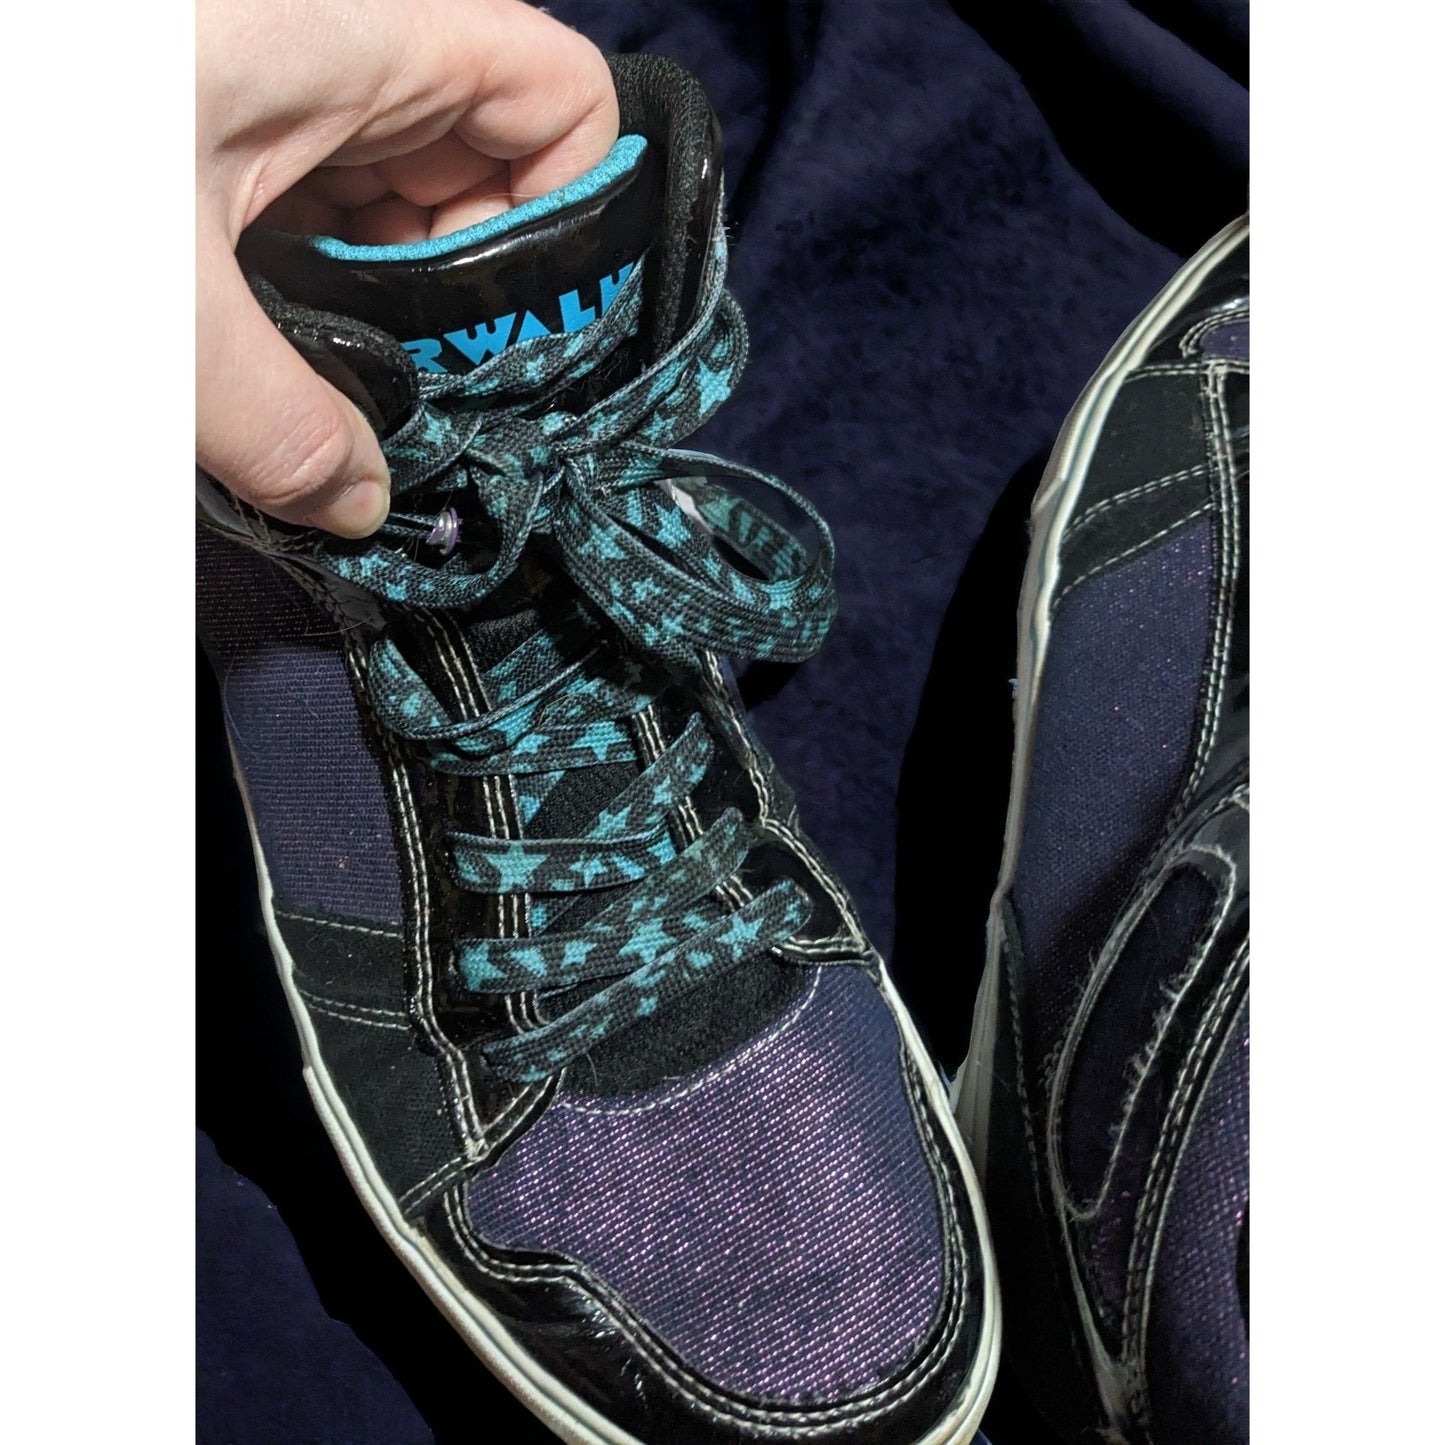 Airwalk Black And Metallic Purple Sneakers